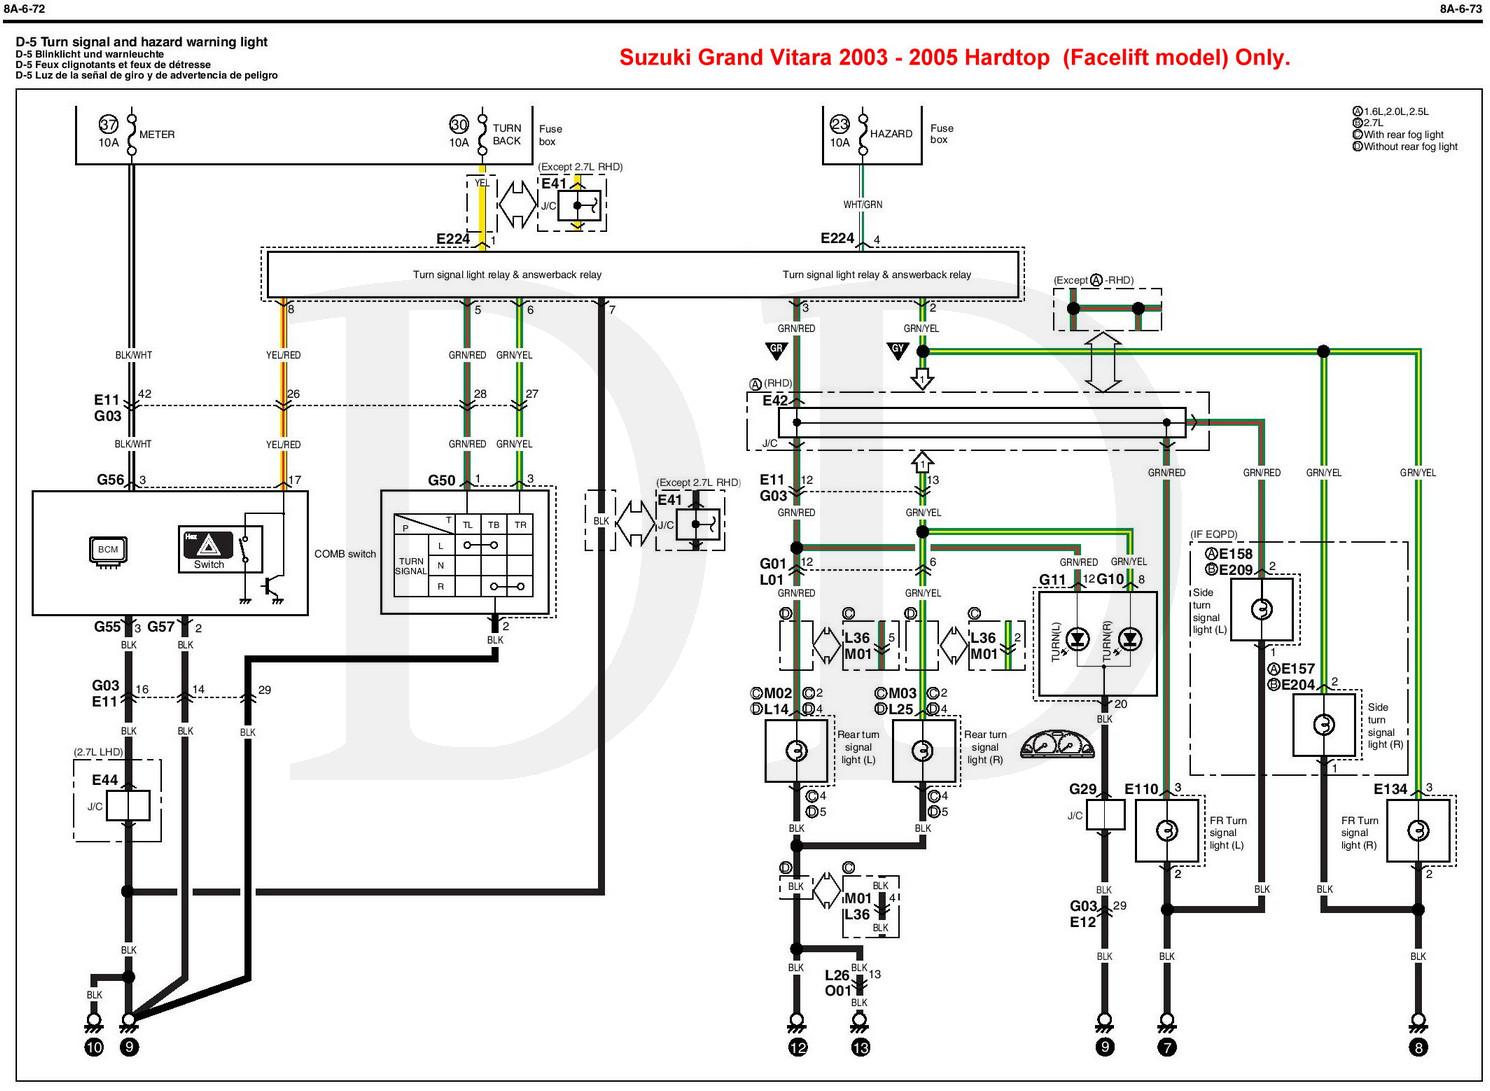 Grand Vitara 2003-2005 hardtop indicator circuit.jpg